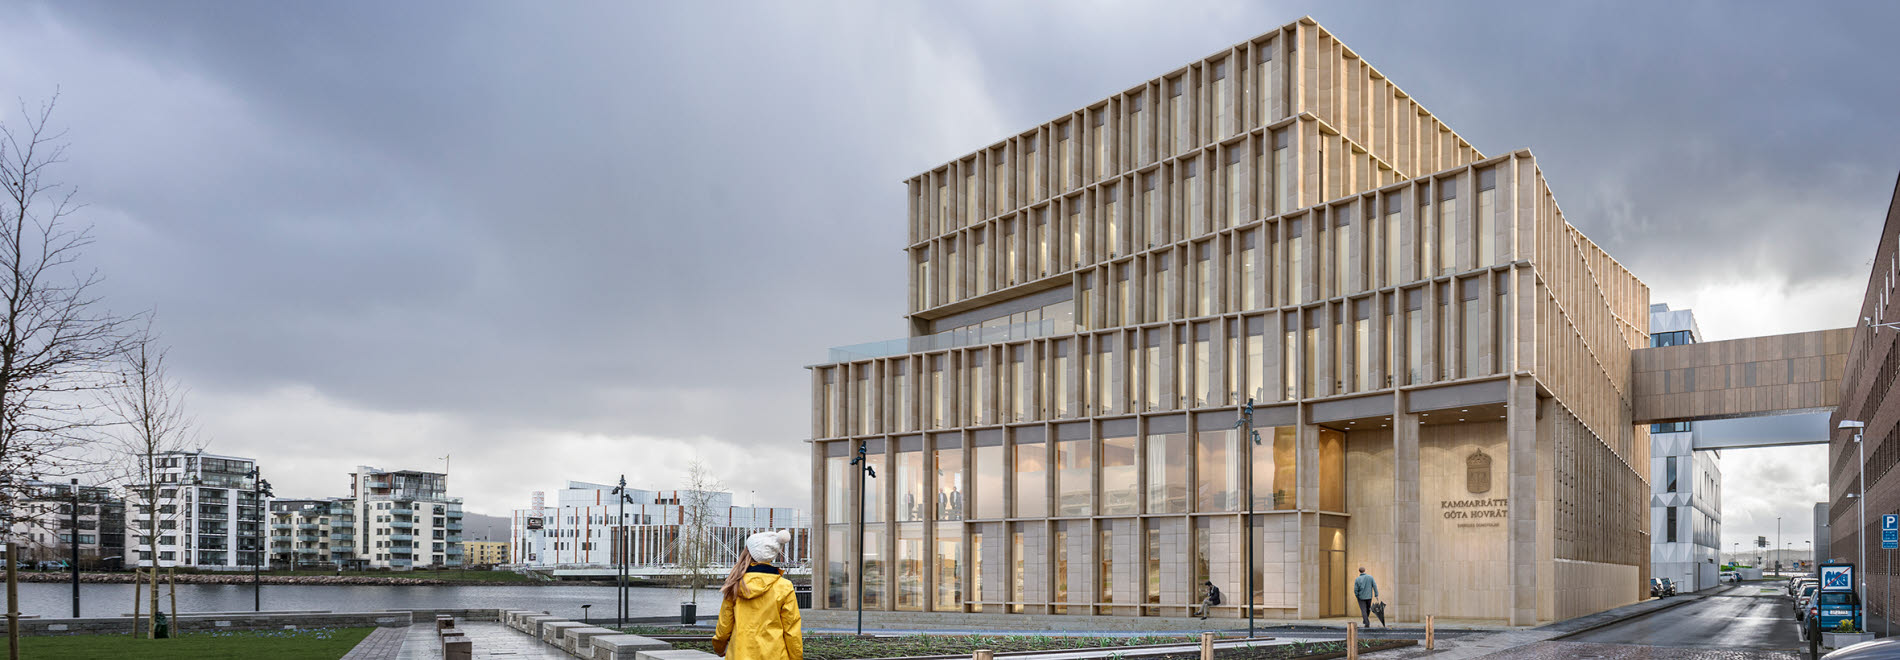 Serneke bygger domstolsbyggnad i Jönköping